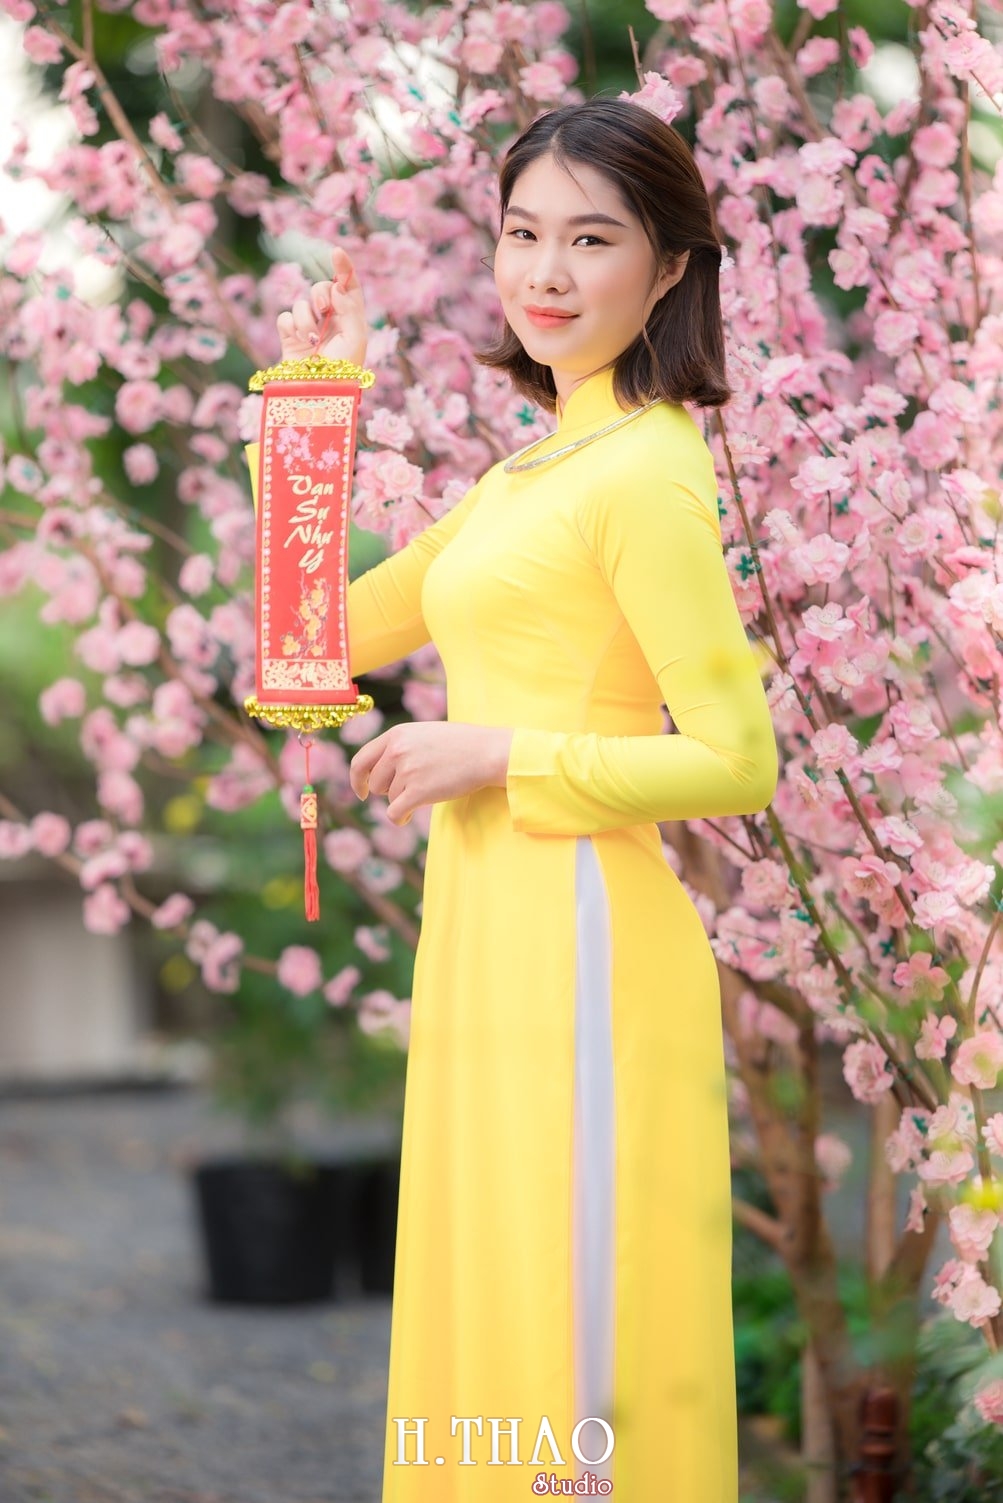 Ao dai tet 9 - Top 40 ảnh áo dài chụp với Hoa đào, hoa mai tết tuyệt đẹp- HThao Studio